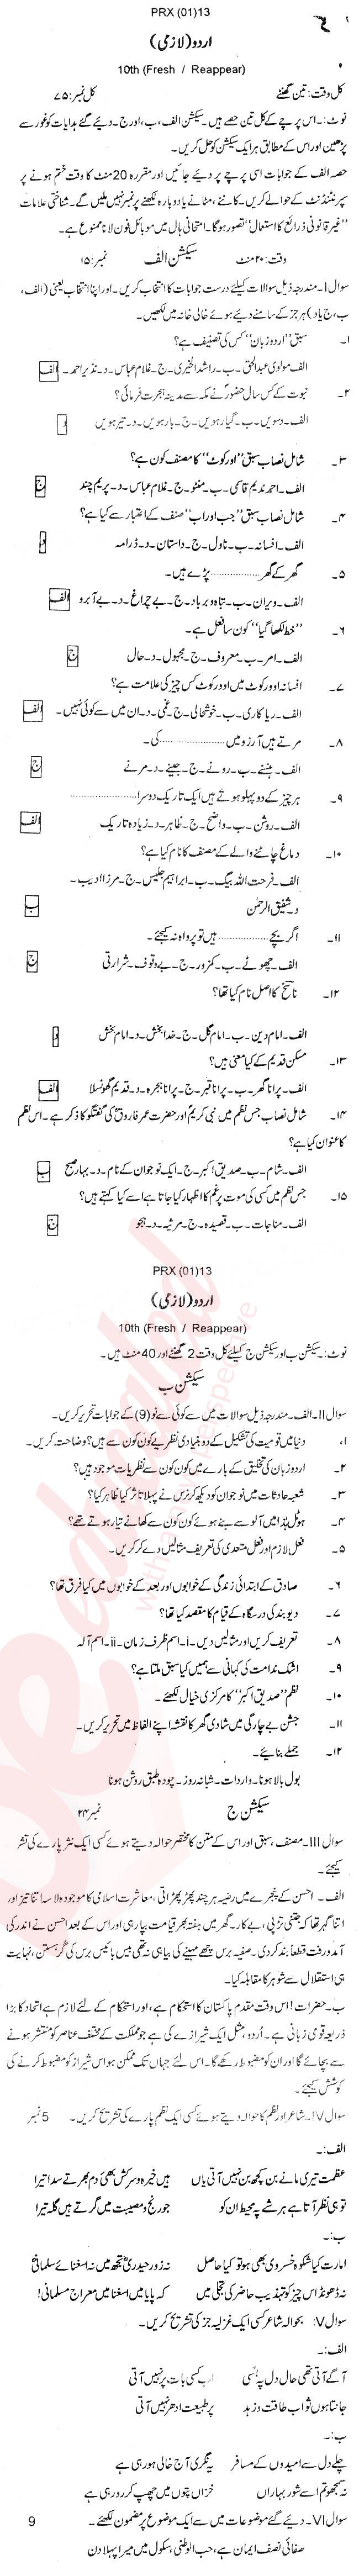 Urdu 10th Urdu Medium Past Paper Group 1 BISE Abbottabad 2013